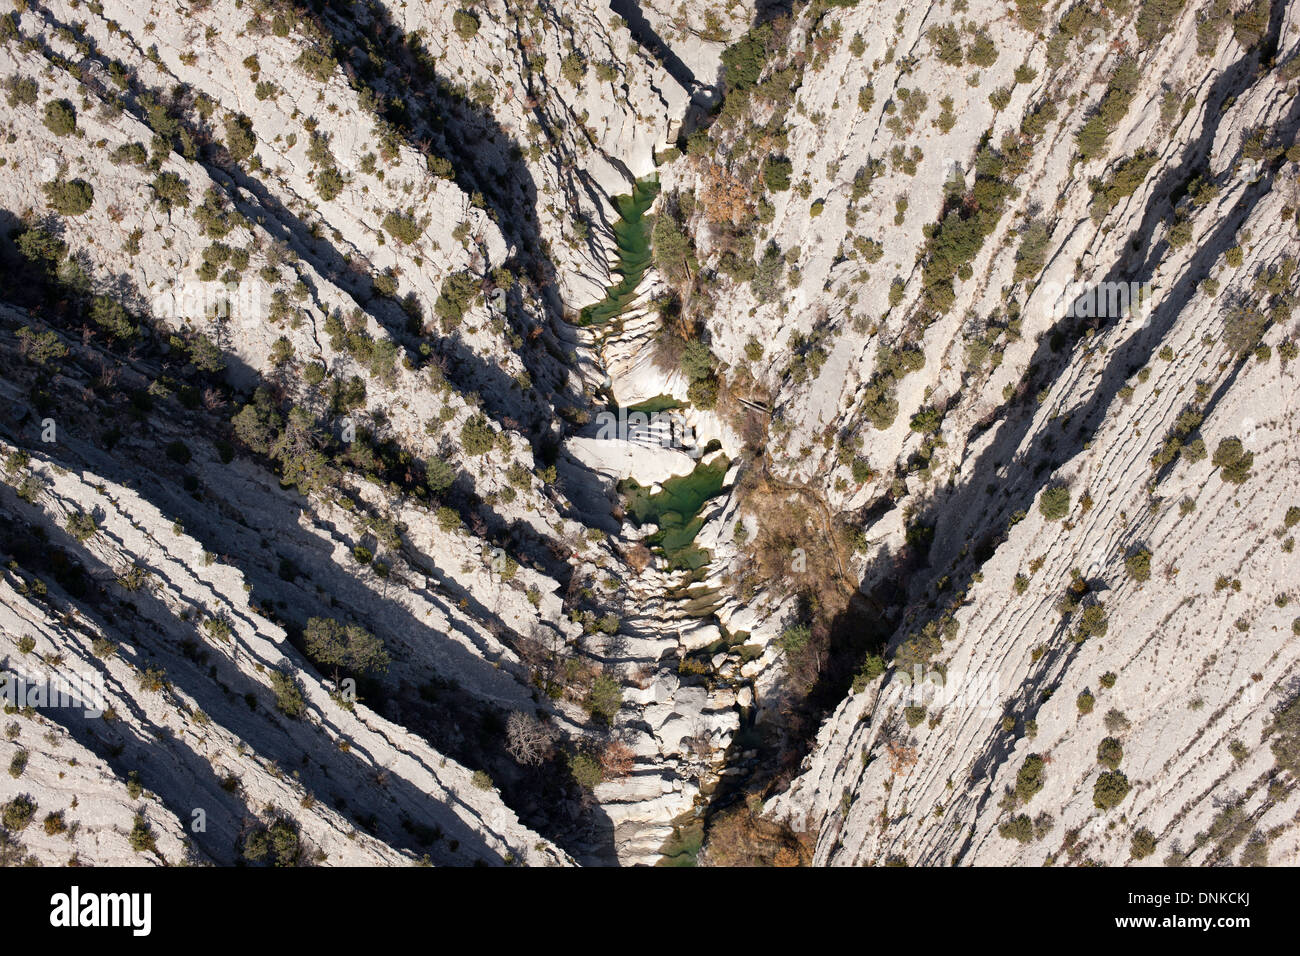 LUFTAUFNAHME. V-förmige Schlucht aus schrägen Kalksteinschichten. Riolan Canyon, Sigale, Alpes-Maritimes, das Hinterland der französischen Riviera, Frankreich. Stockfoto